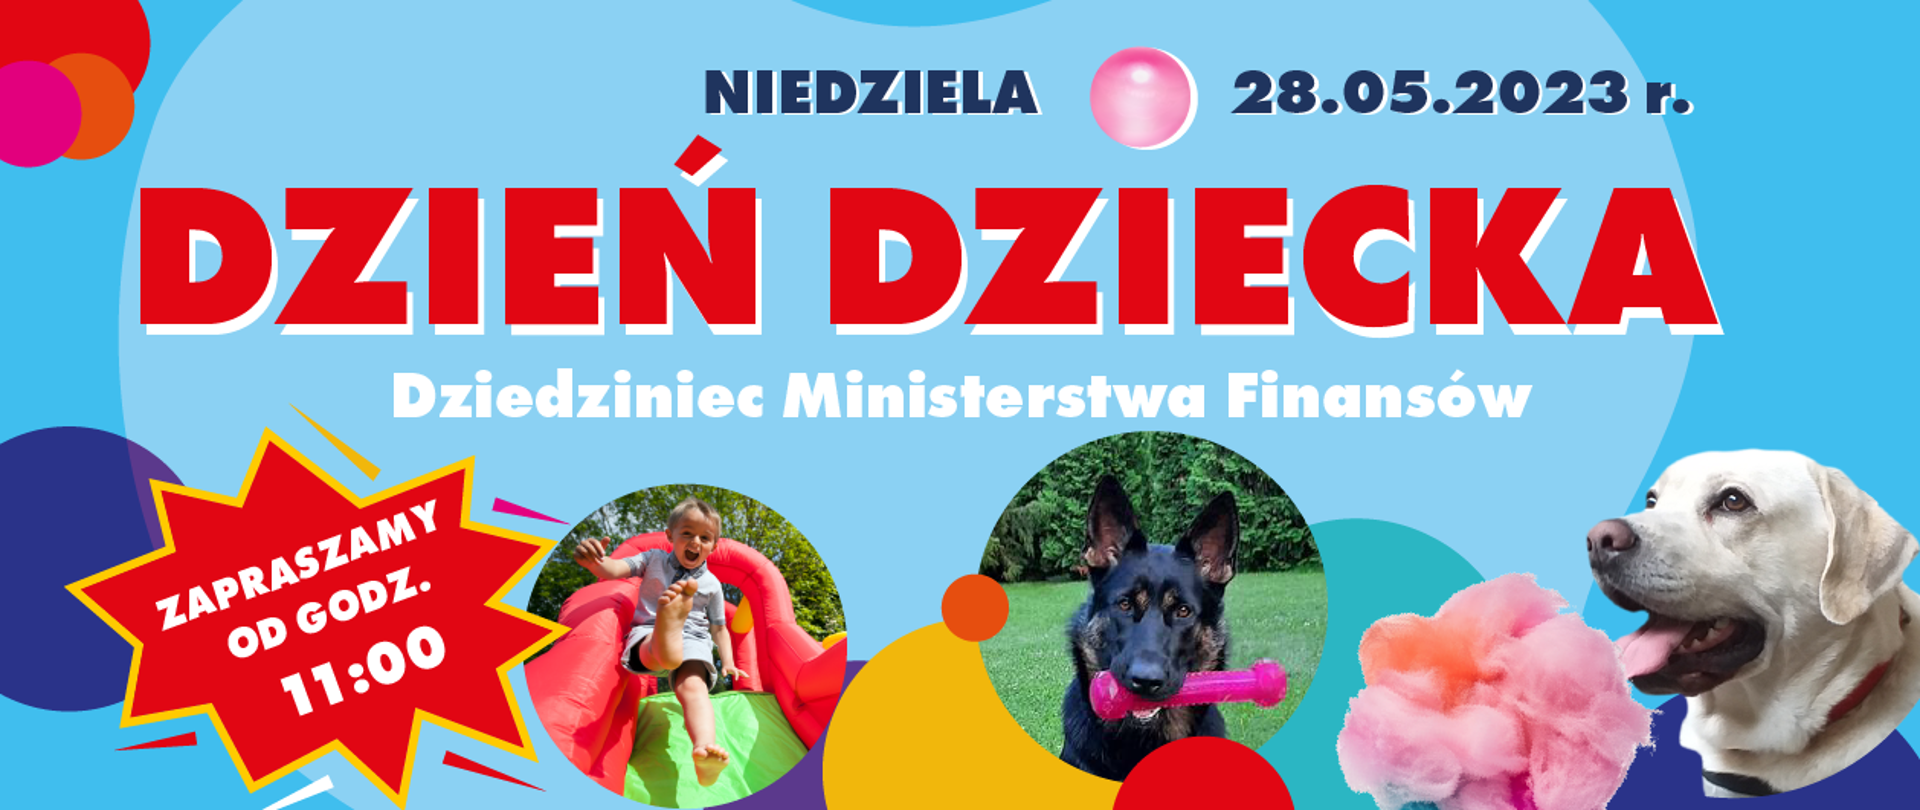 Plakat z napisem dzień dziecka dziedziniec Ministerstwa Finansów. Na plakacie wizerunki psów i dziecka.